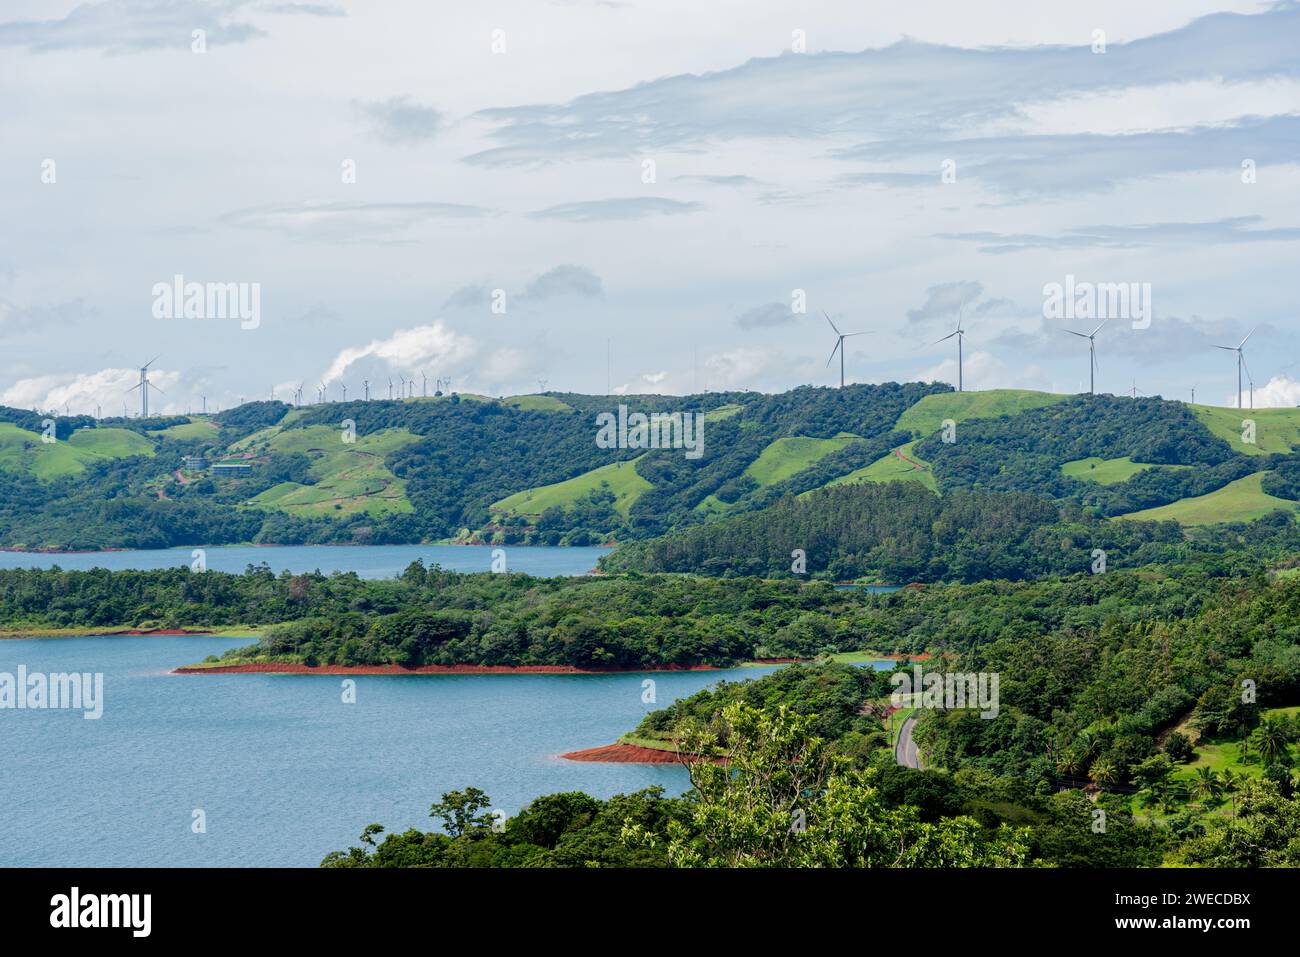 Un paesaggio panoramico adornato da mulini a vento che sfruttano la potenza del vento per generare energia pulita e sostenibile. Foto Stock